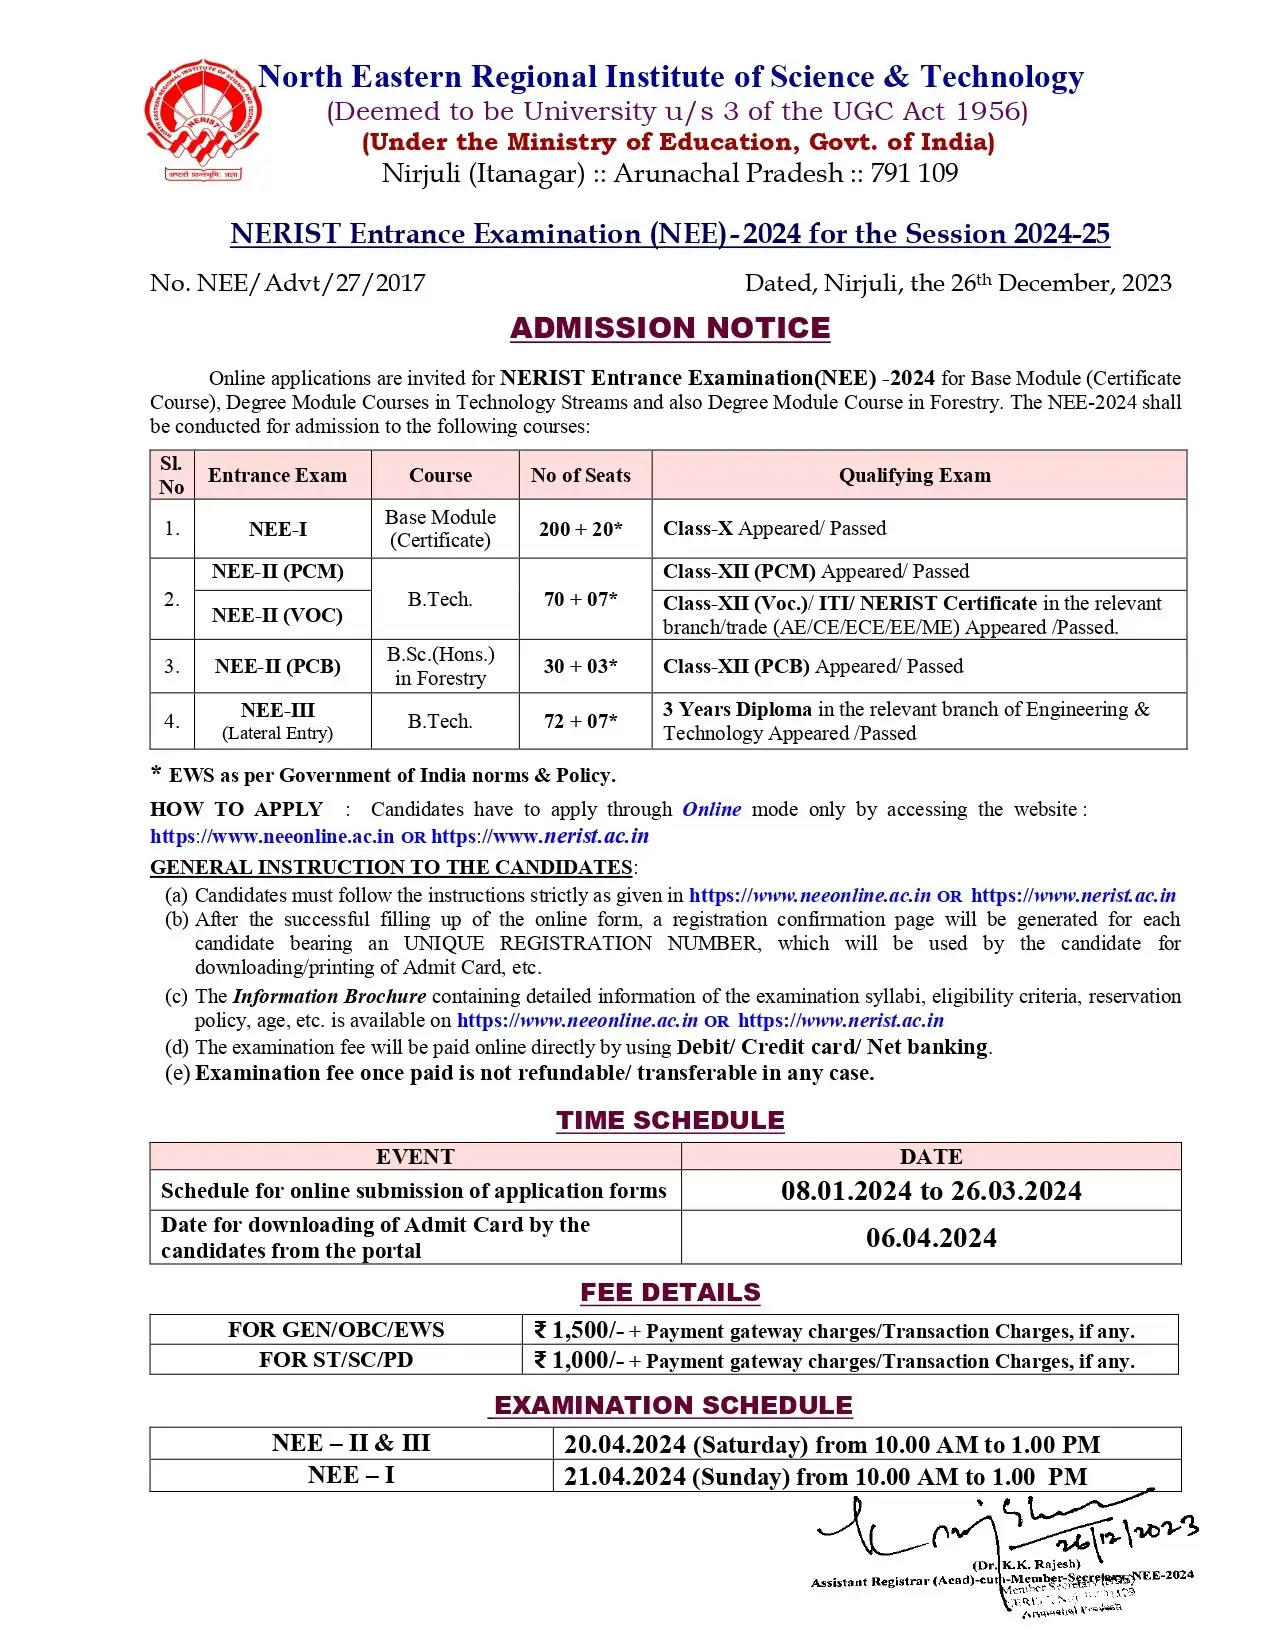 NERIST NEE 2024 के लिए आवेदन 8 जनवरी से शुरू, जानें परीक्षा तिथि, पात्रता और अन्य विवरण